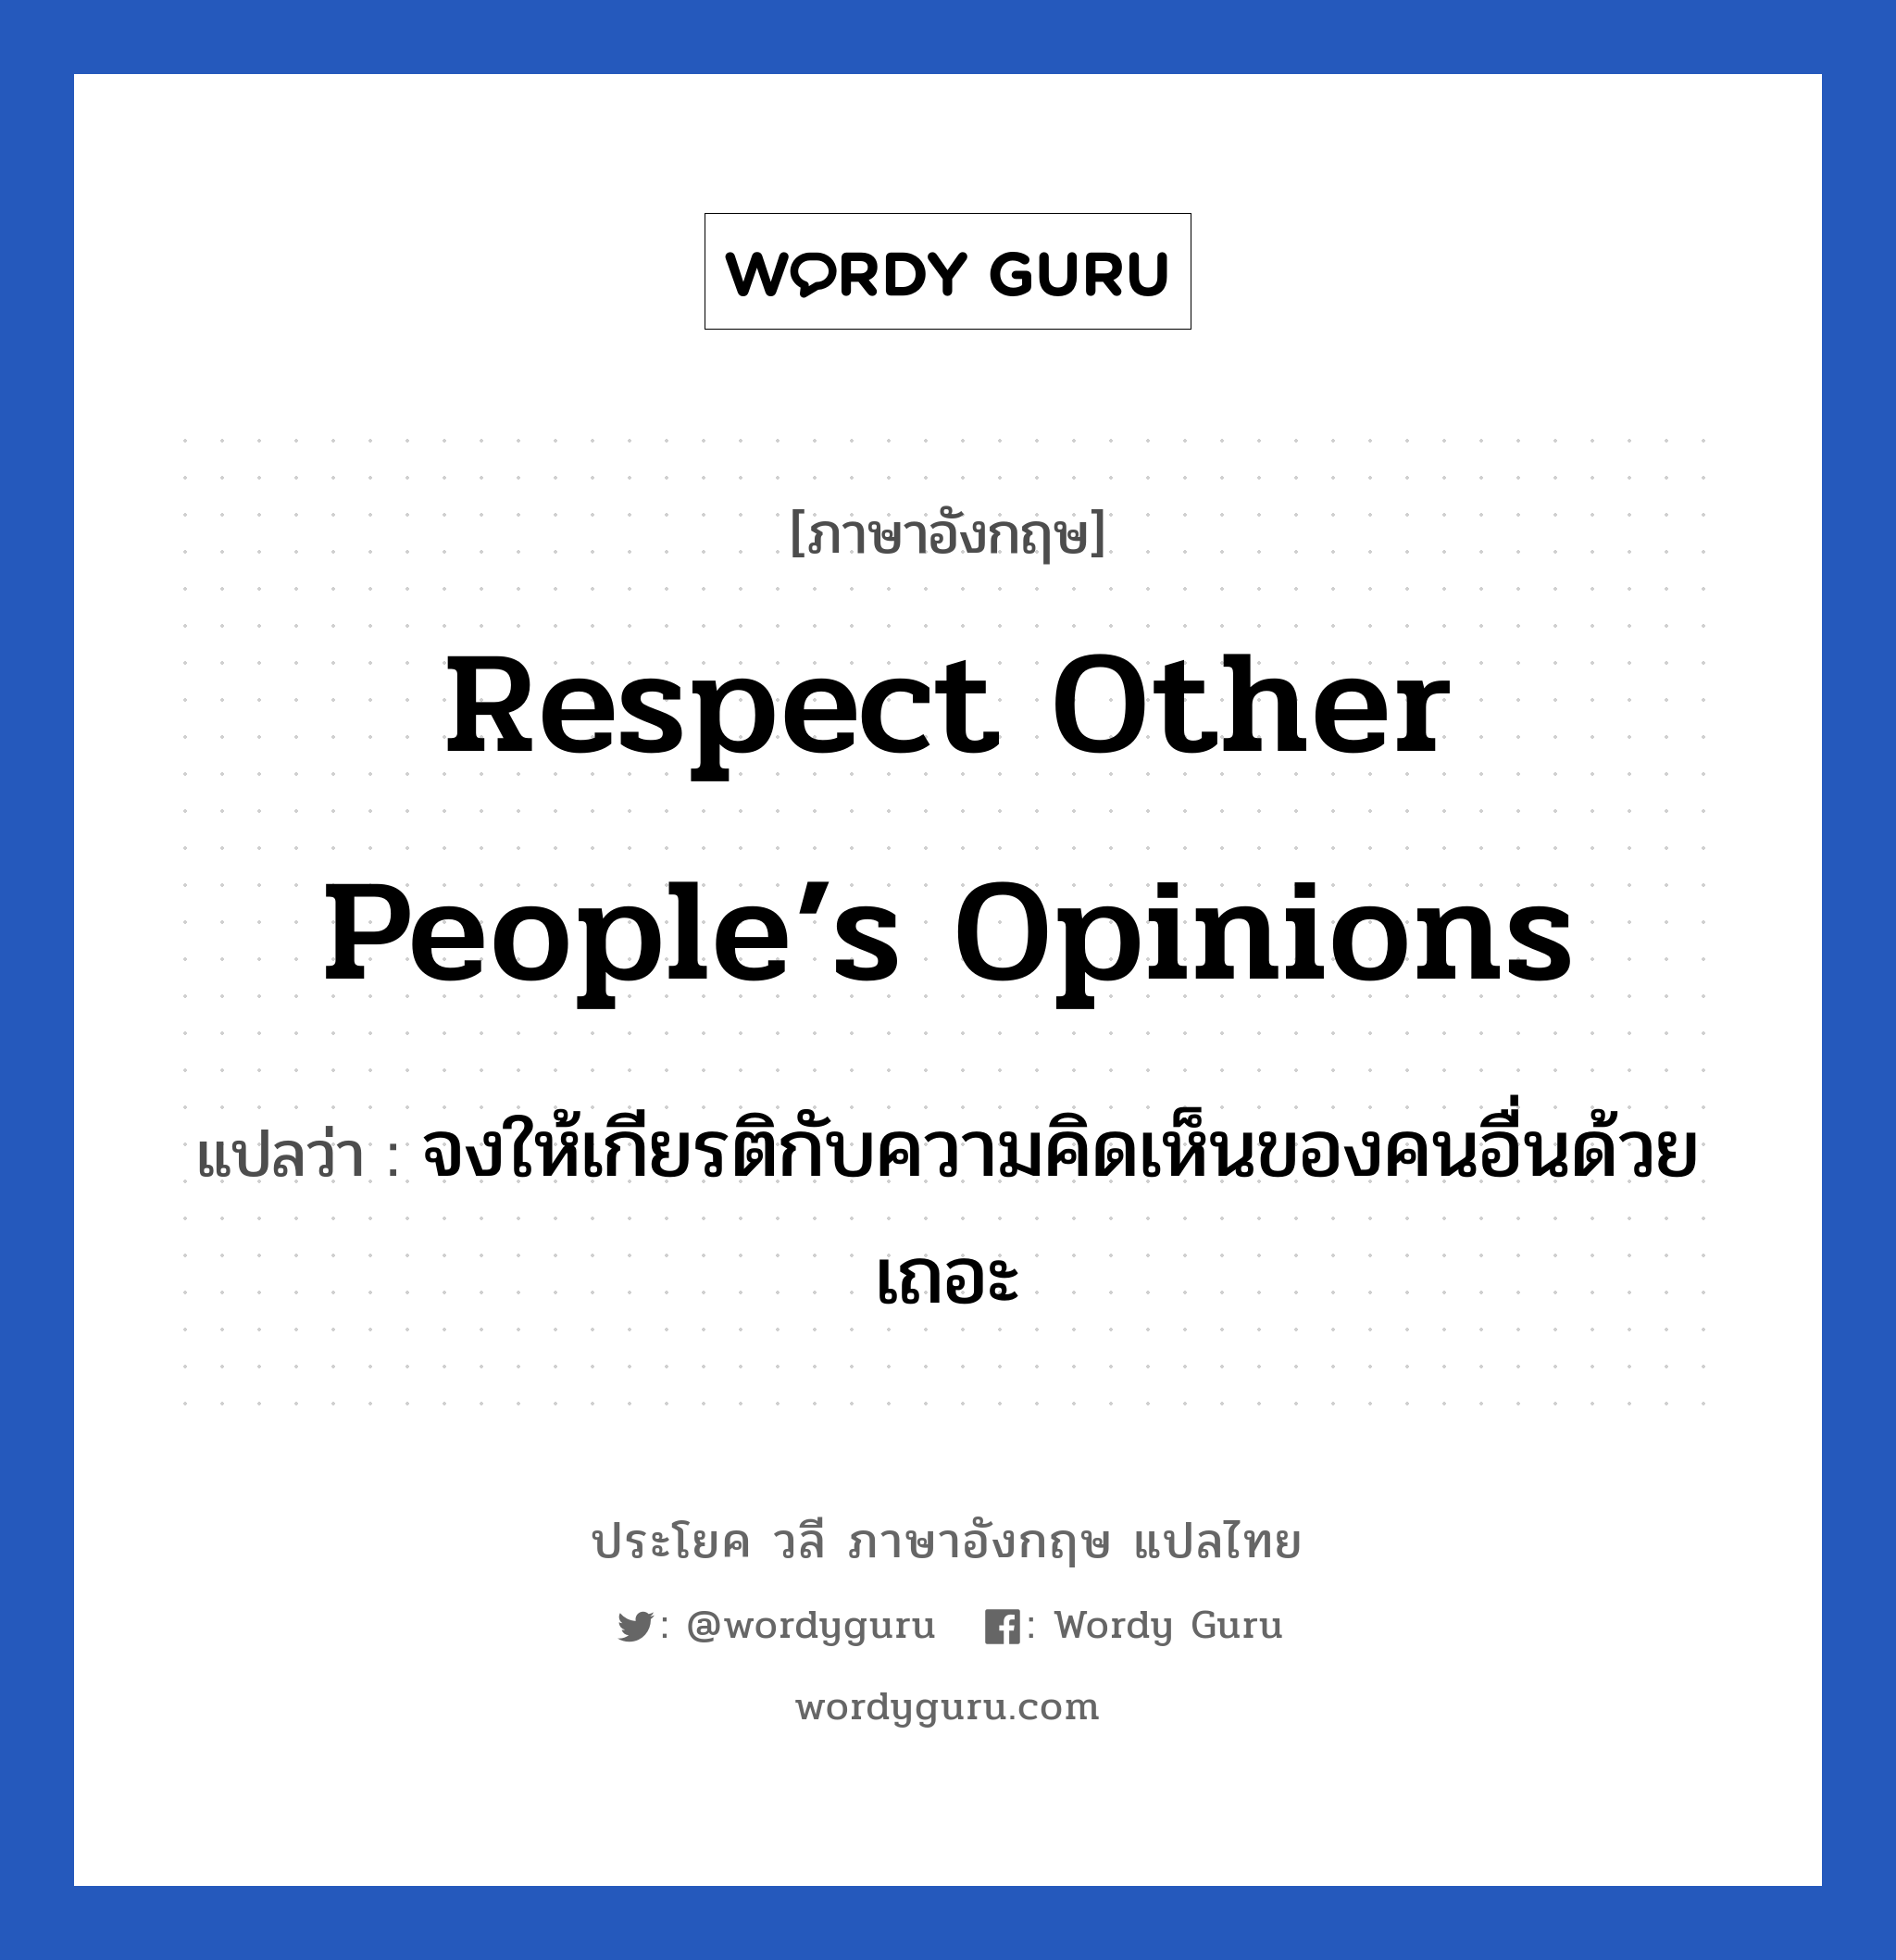 จงให้เกียรติกับความคิดเห็นของคนอื่นด้วยเถอะ ภาษาอังกฤษ?, วลีภาษาอังกฤษ จงให้เกียรติกับความคิดเห็นของคนอื่นด้วยเถอะ แปลว่า Respect other people’s opinions